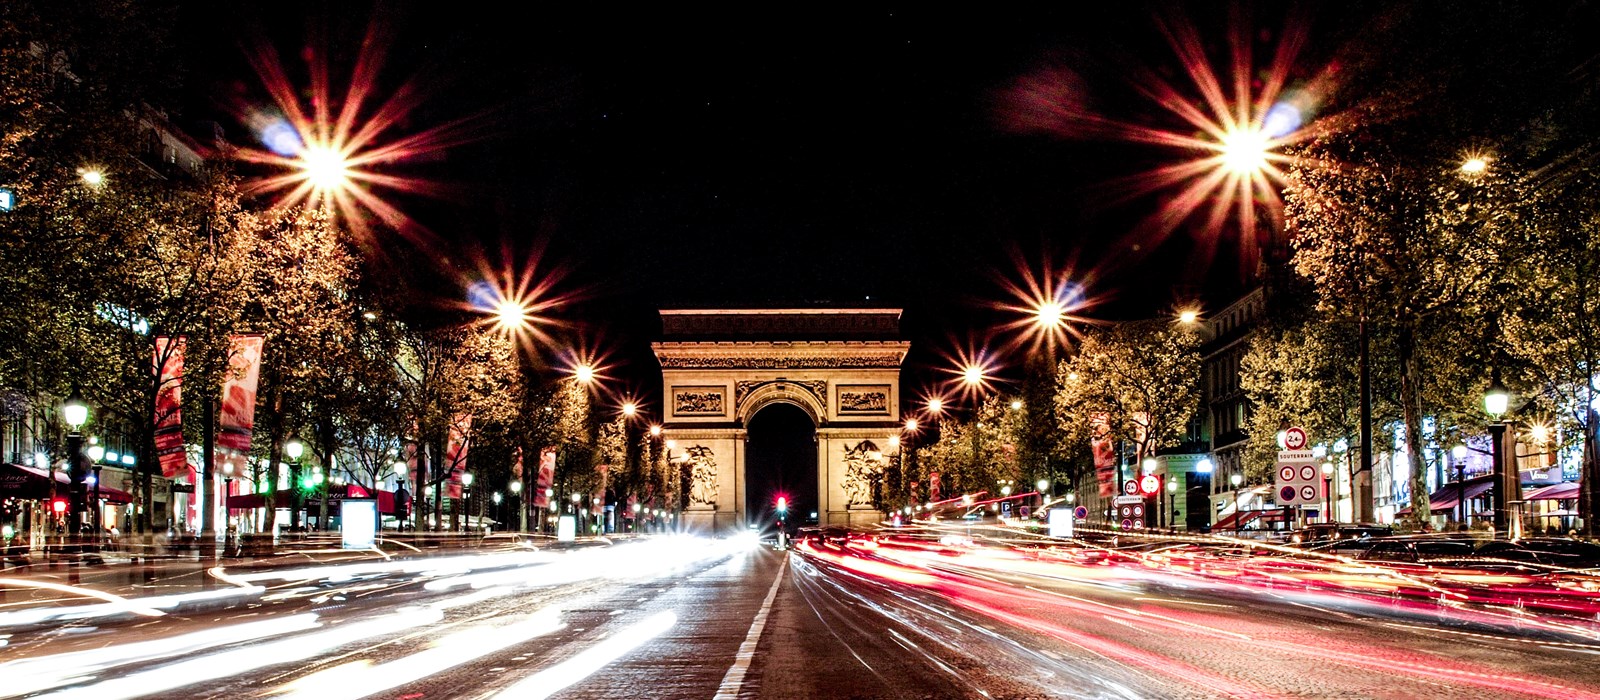 The Champs-Élysées and the Arc de Triomphe